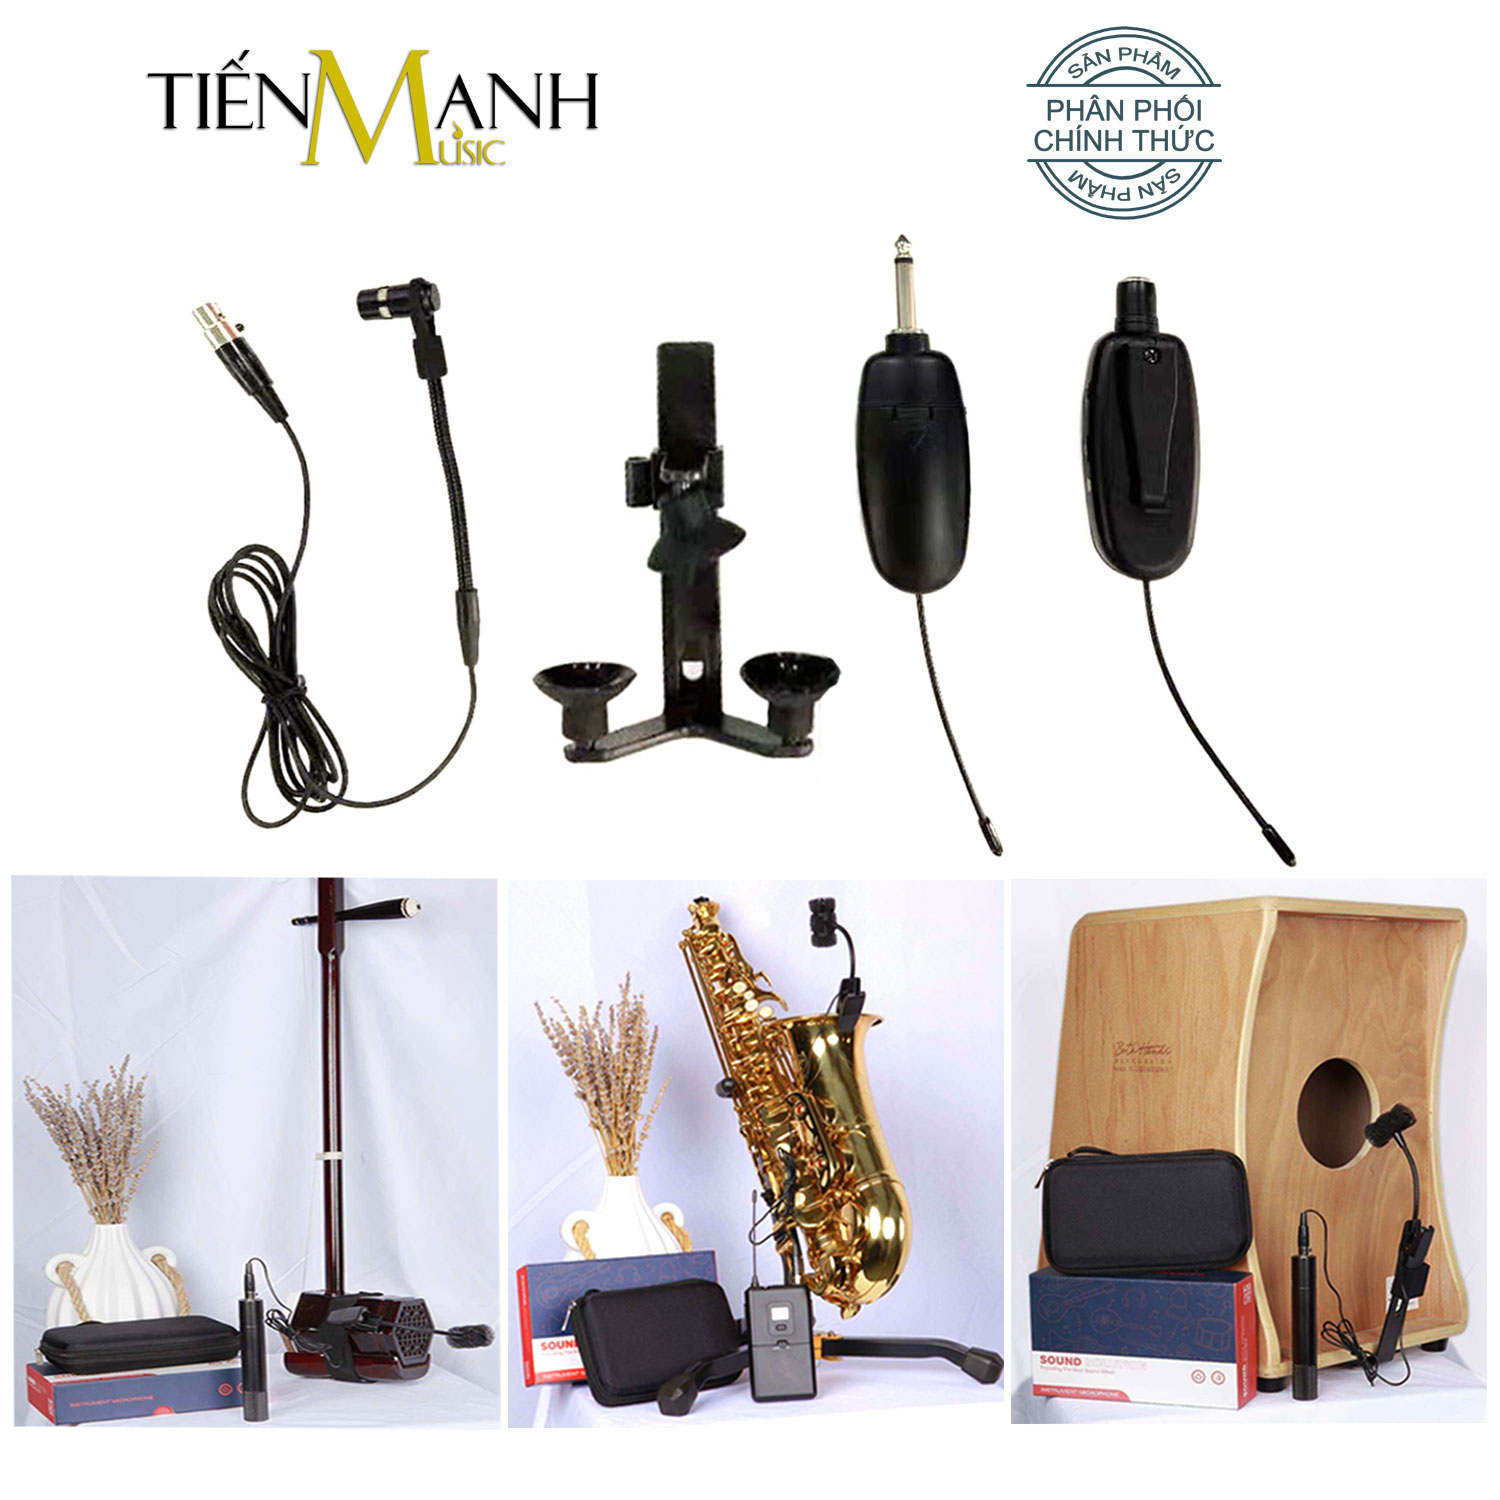 Bộ Microphone Không Dây Dr.MIC W8-8-B10 Dùng Cho Đàn Violin, Guitar, Kèn, Nhị và Nhạc Cụ Khác - Wireless receiver and transmitter